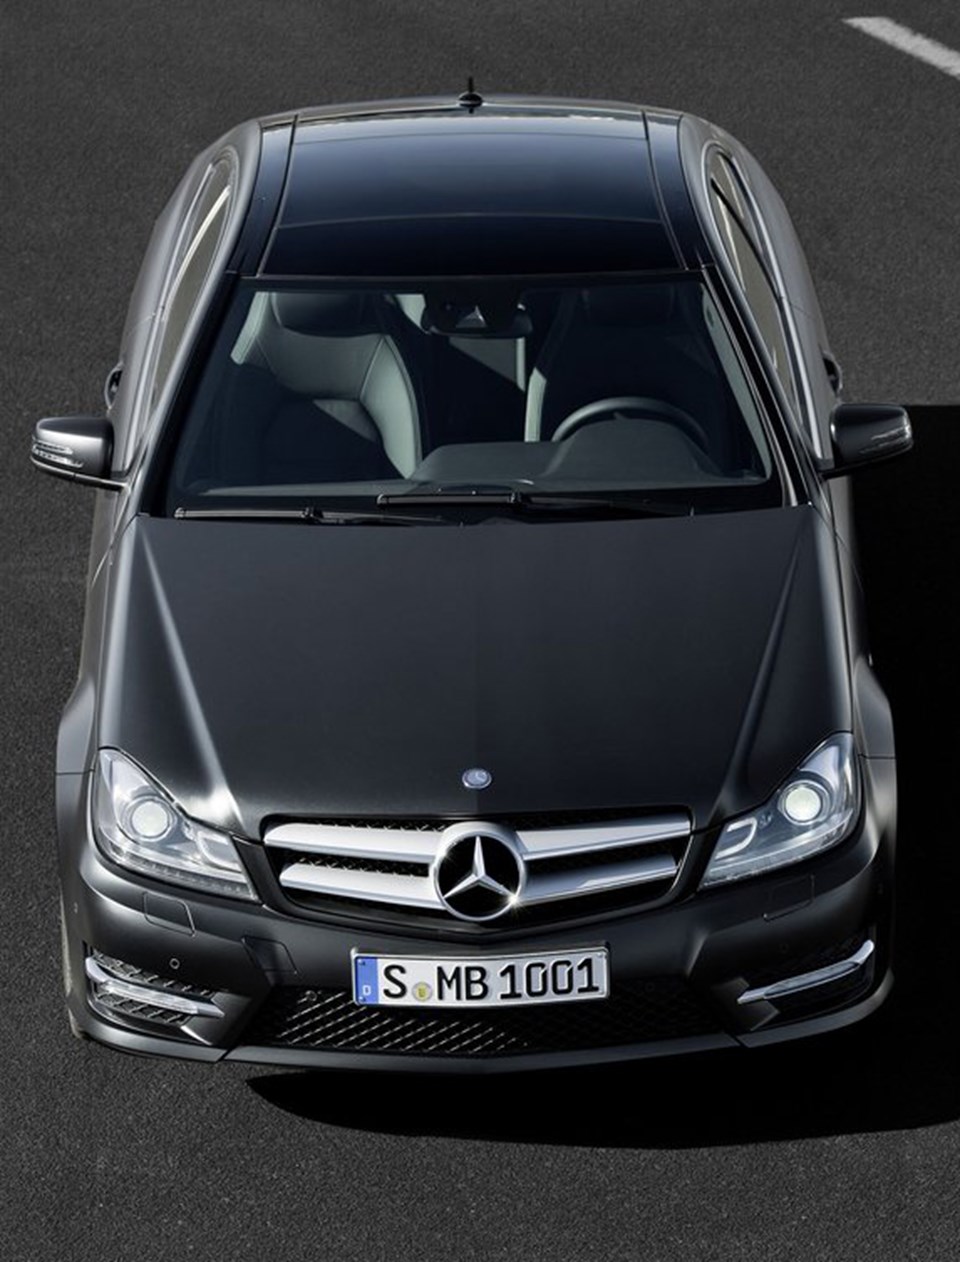 Mercedes-Benz C Coupe tanıtıldı - 1